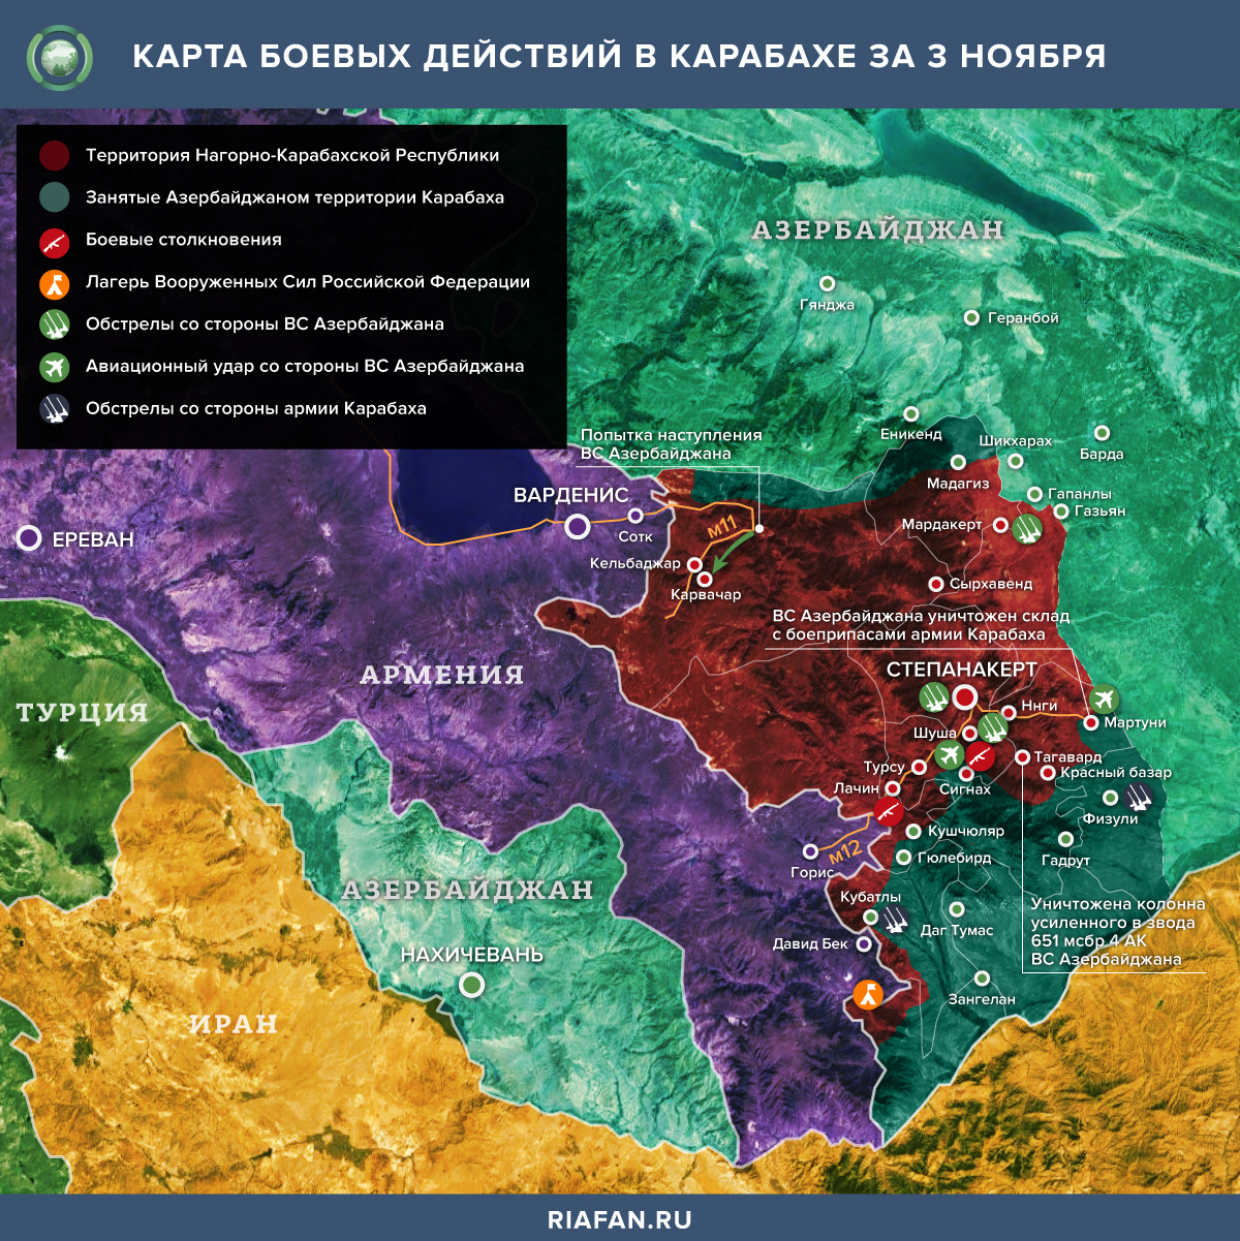 Карта боевых действий в Карабахе